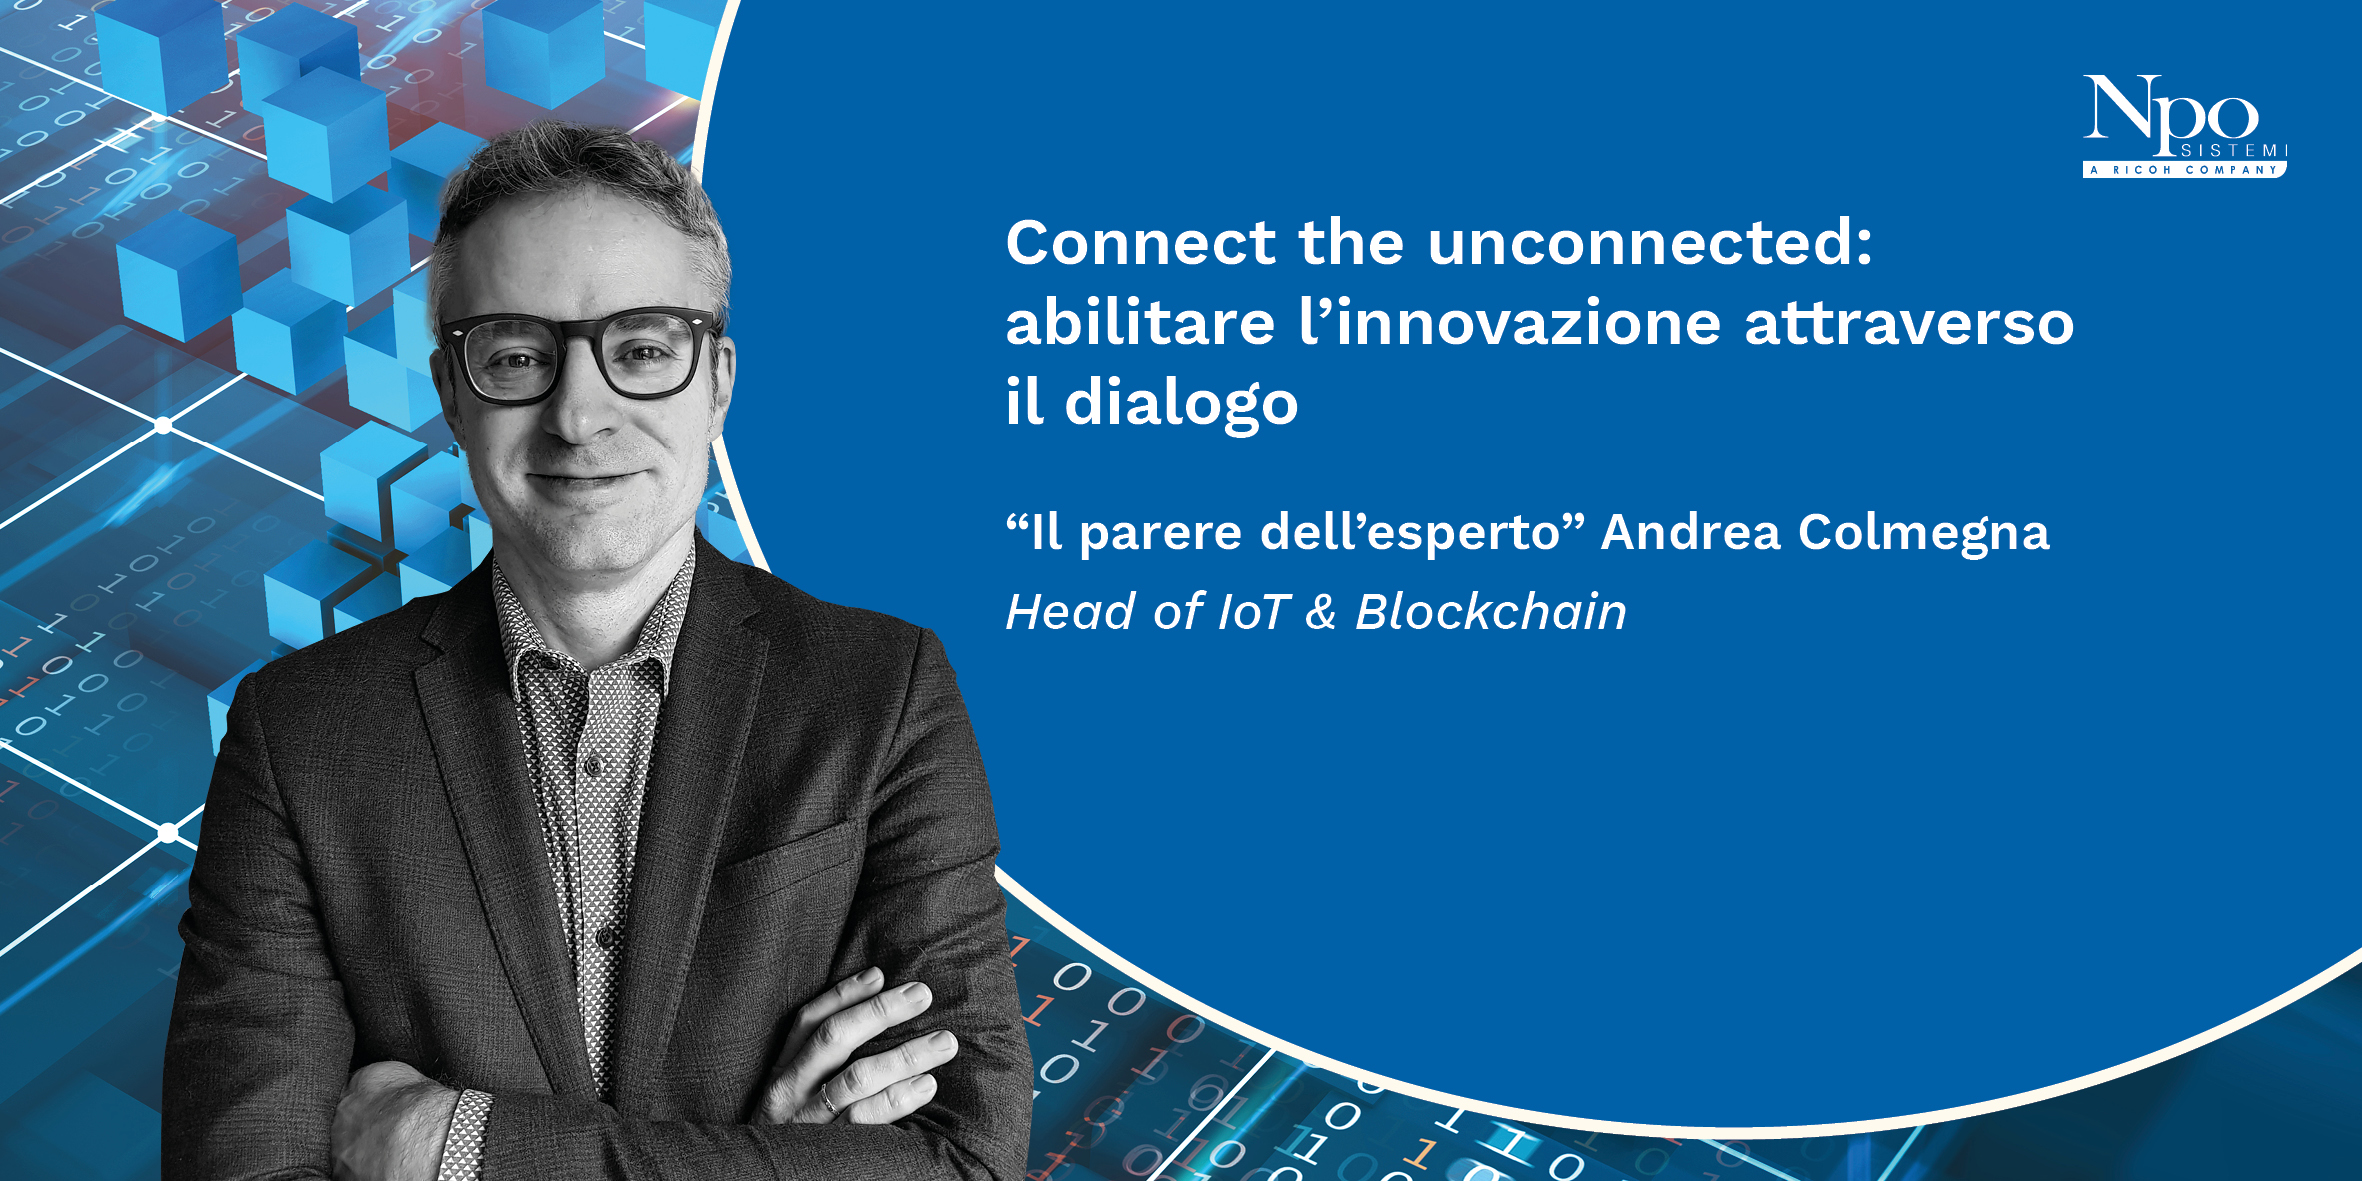 Connect the unconnected: abilitare l’innovazione attraverso il dialogo.